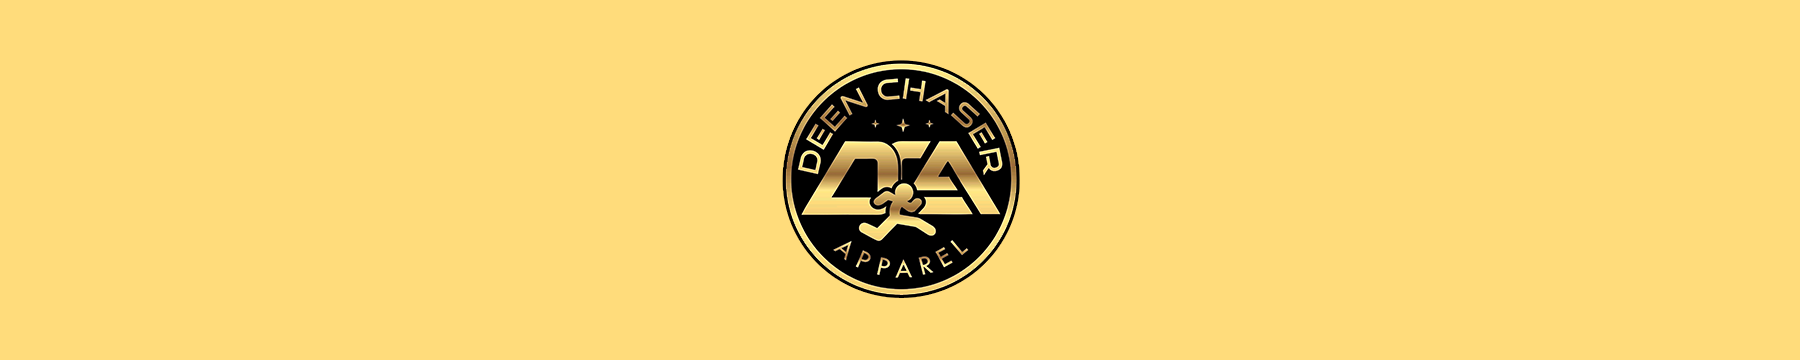 Deen Chaser Apparel